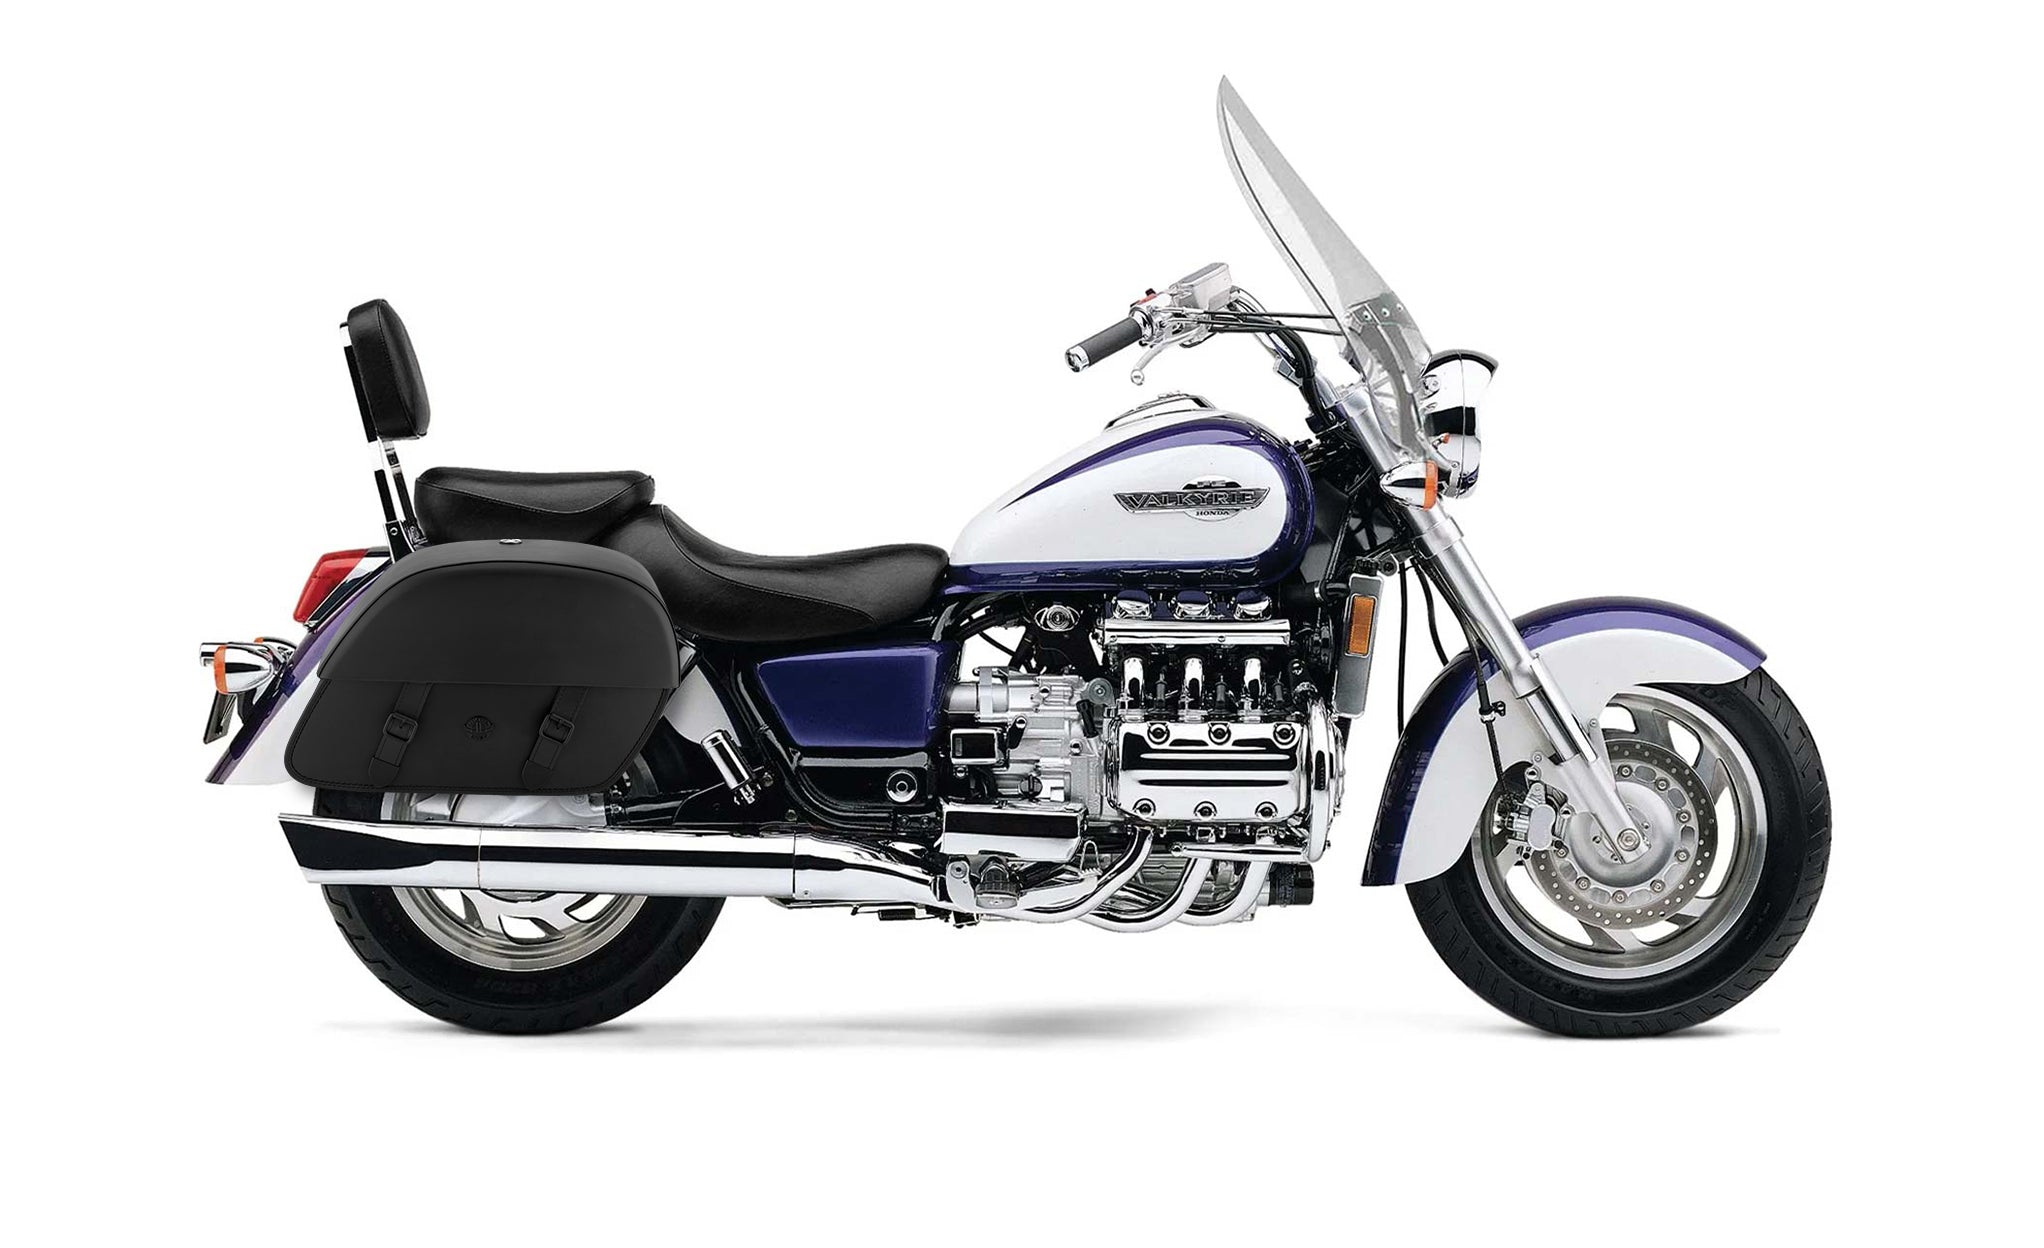 Viking Baelor Large Honda Valkyrie 1500 Tourer Leather Motorcycle Saddlebags on Bike Photo @expand